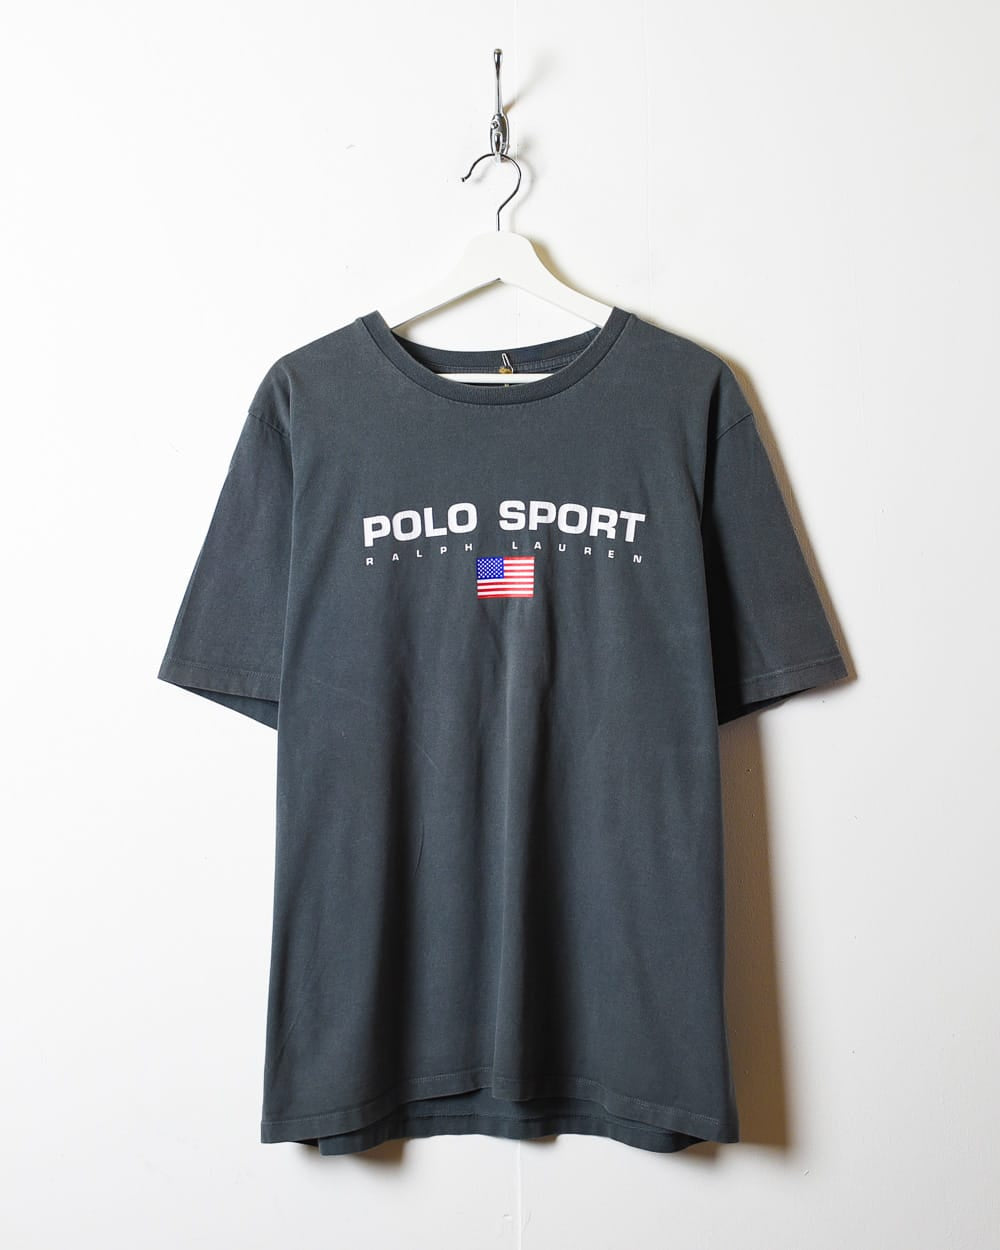 Grey Polo Sport Ralph Lauren T-Shirt - Large